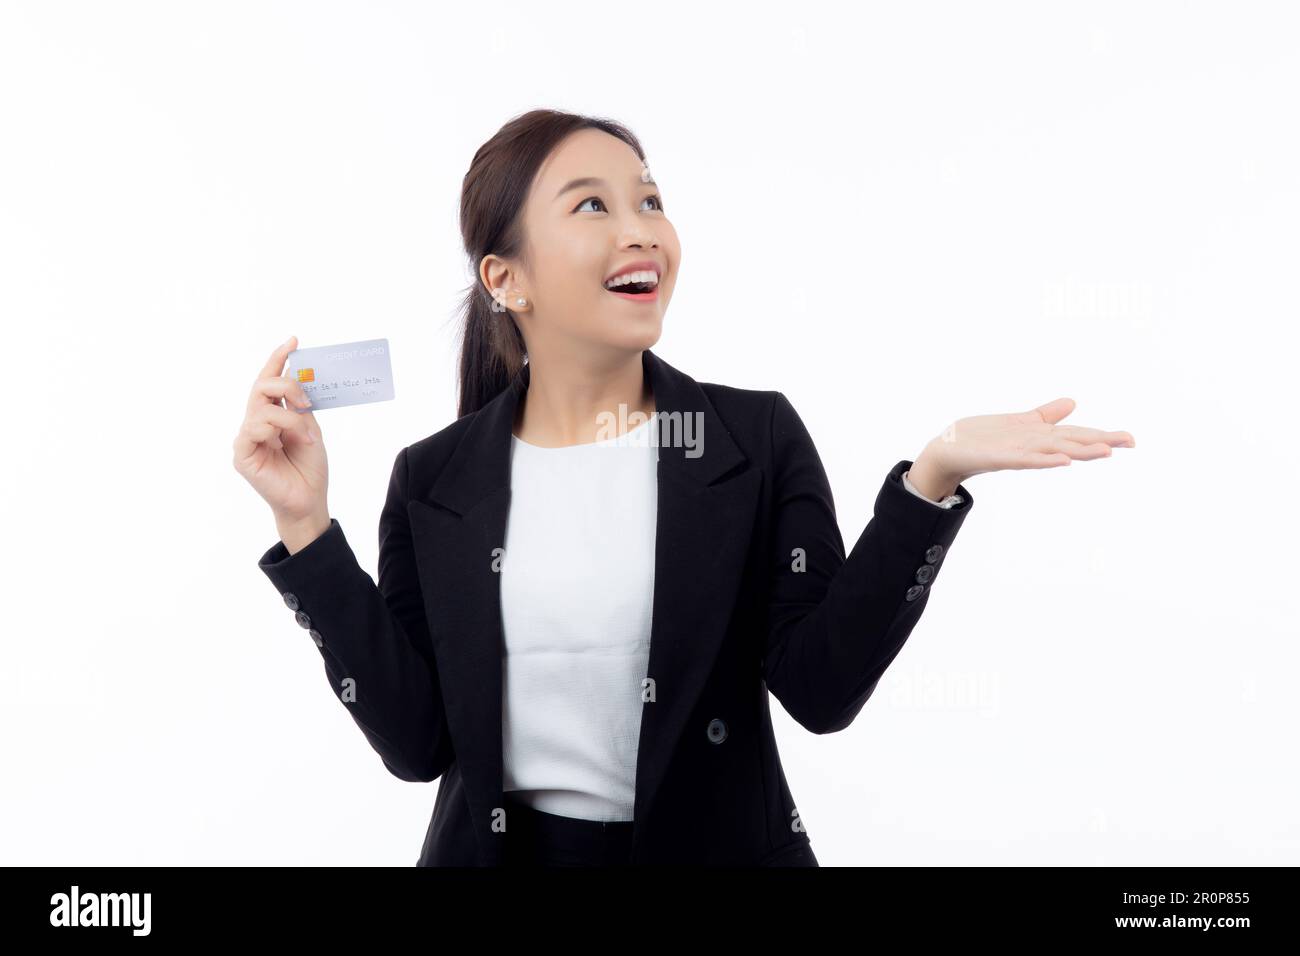 Ritratto giovane donna asiatica d'affari con carta di credito o di debito mostra e presentazione isolato su sfondo bianco, donna d'affari shopping online Foto Stock